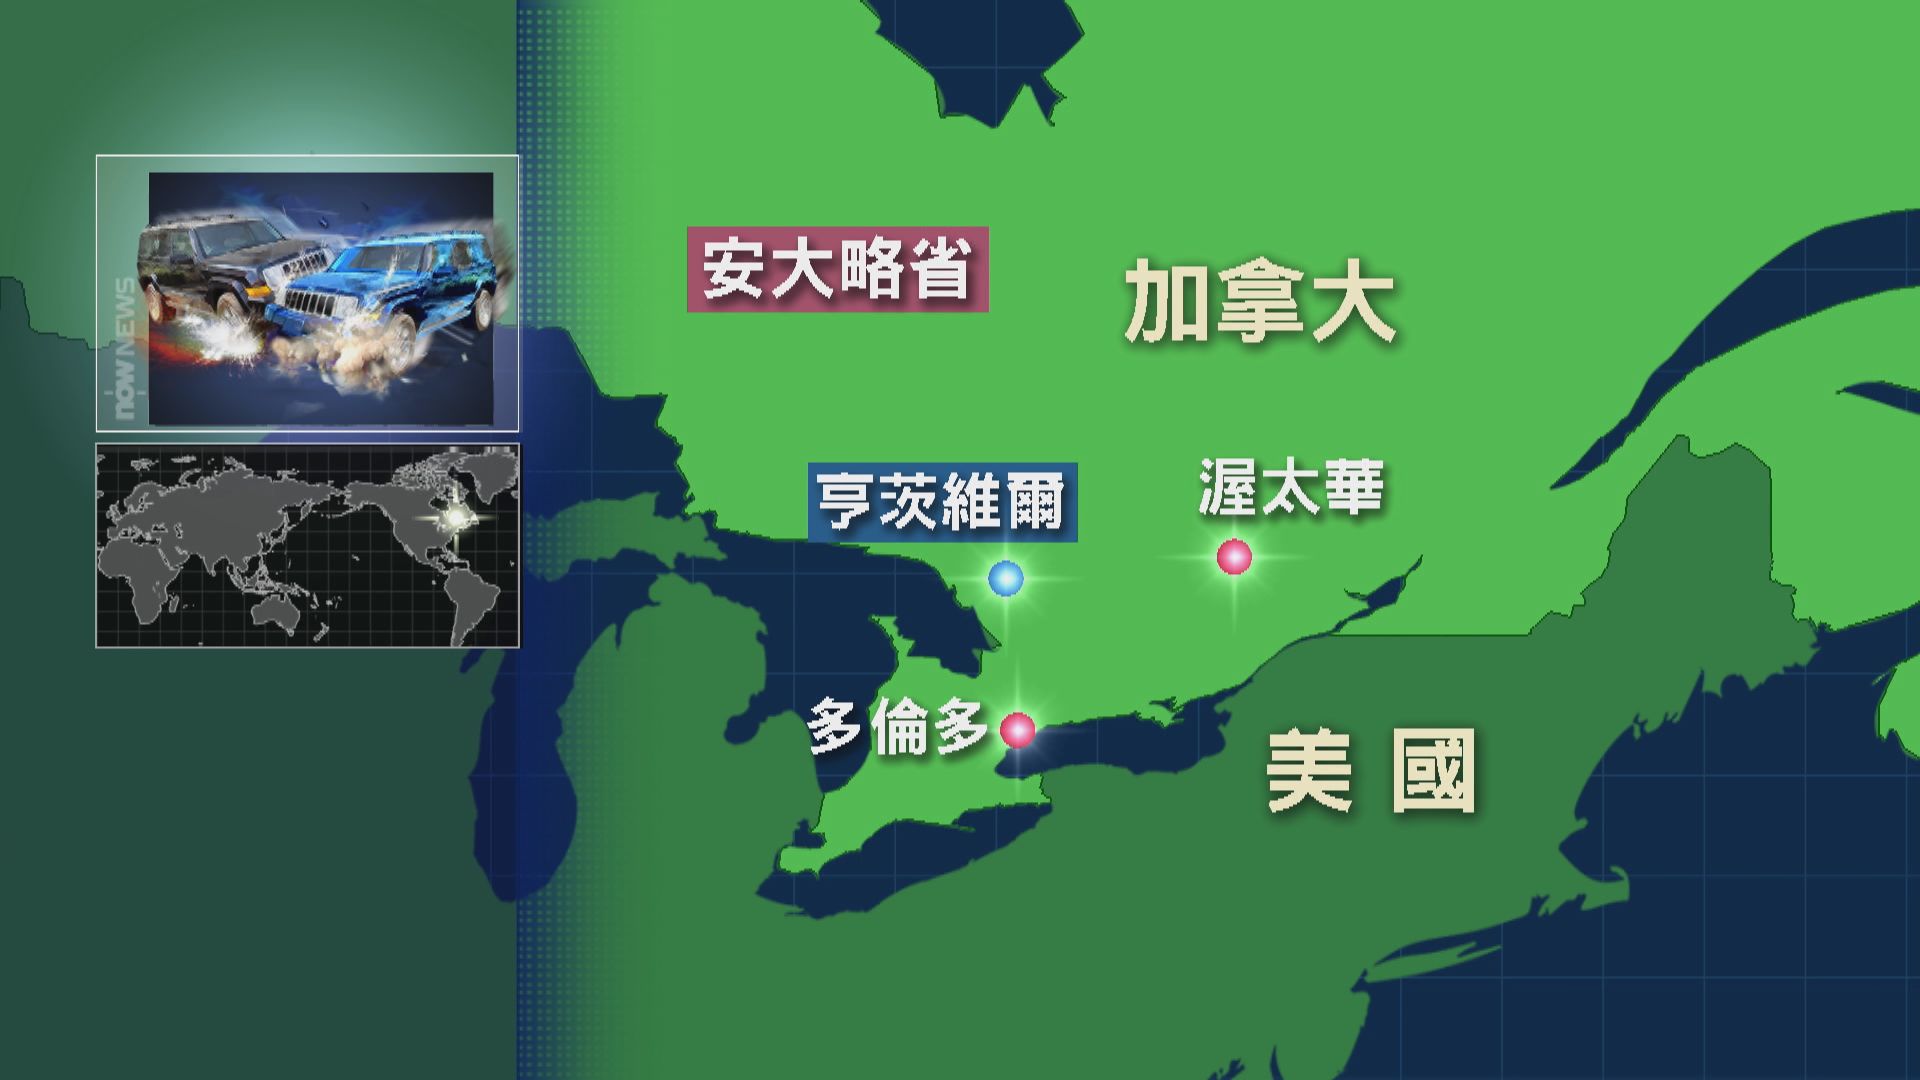 加拿大多倫多附近發生嚴重車禍 其中四名死者為中國留學生